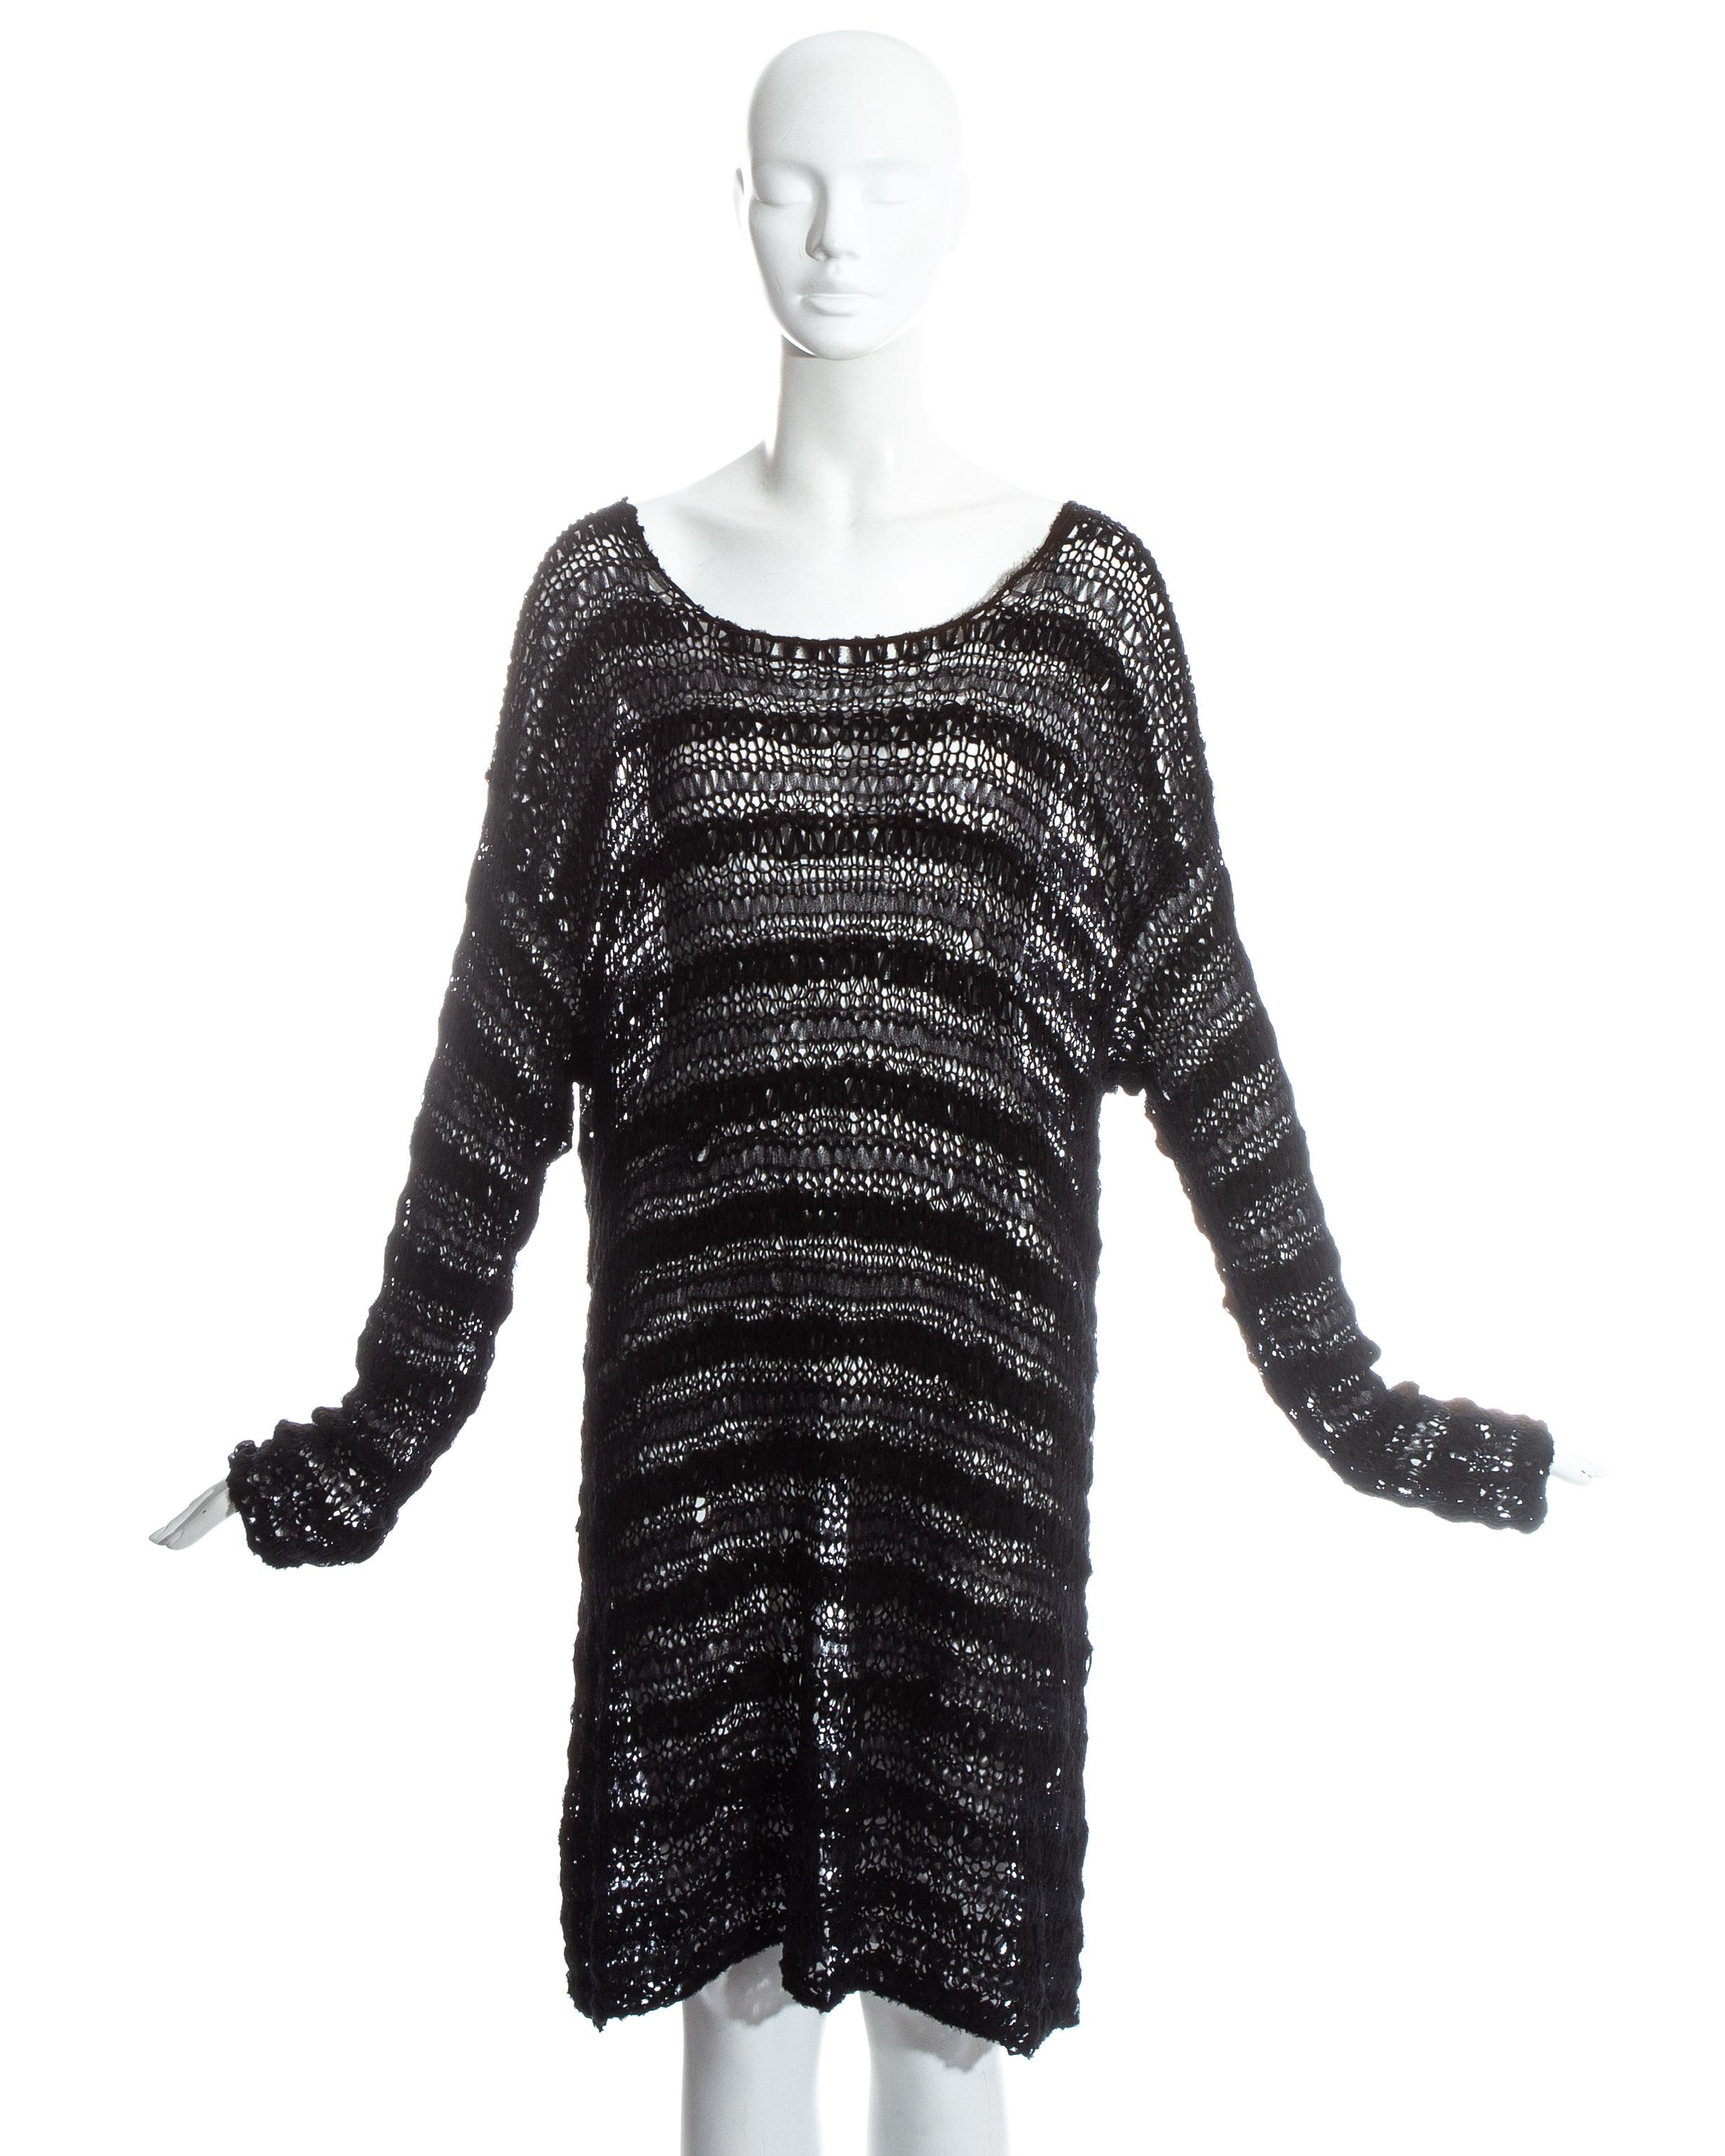 Dolce Gabbana Silk Sweater - 4 For Sale on 1stDibs